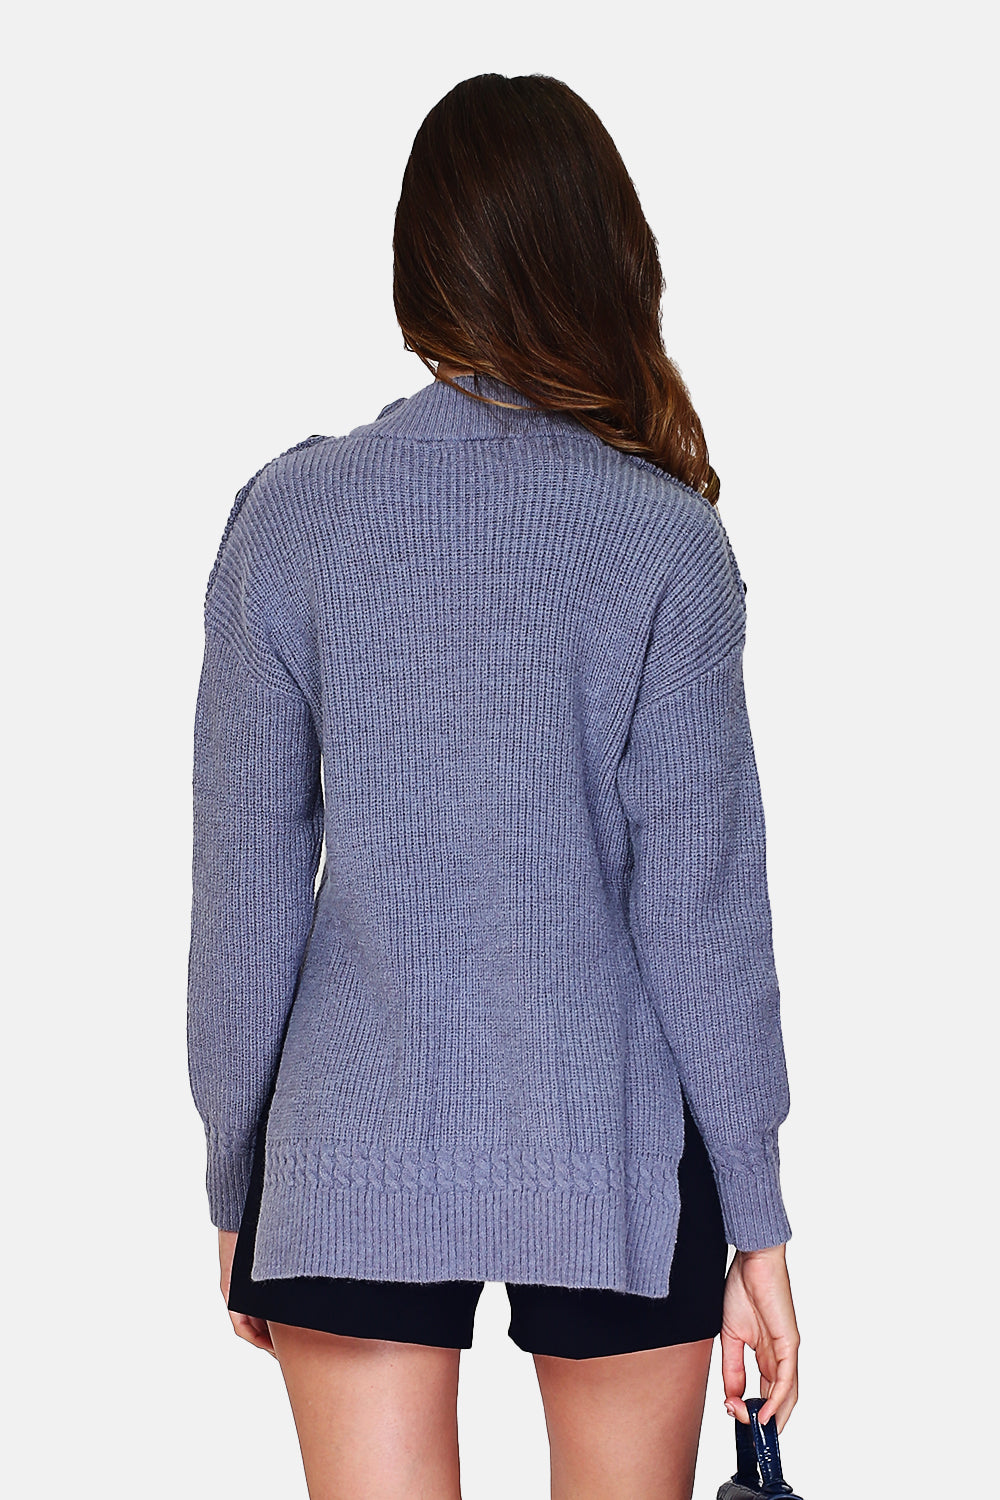 Pullover mit hohem Kragen, geschlossen durch eine Knopfleiste an der Schulter, unten aus Zopfmuster mit langen Ärmeln und Schlitzen an den Seiten